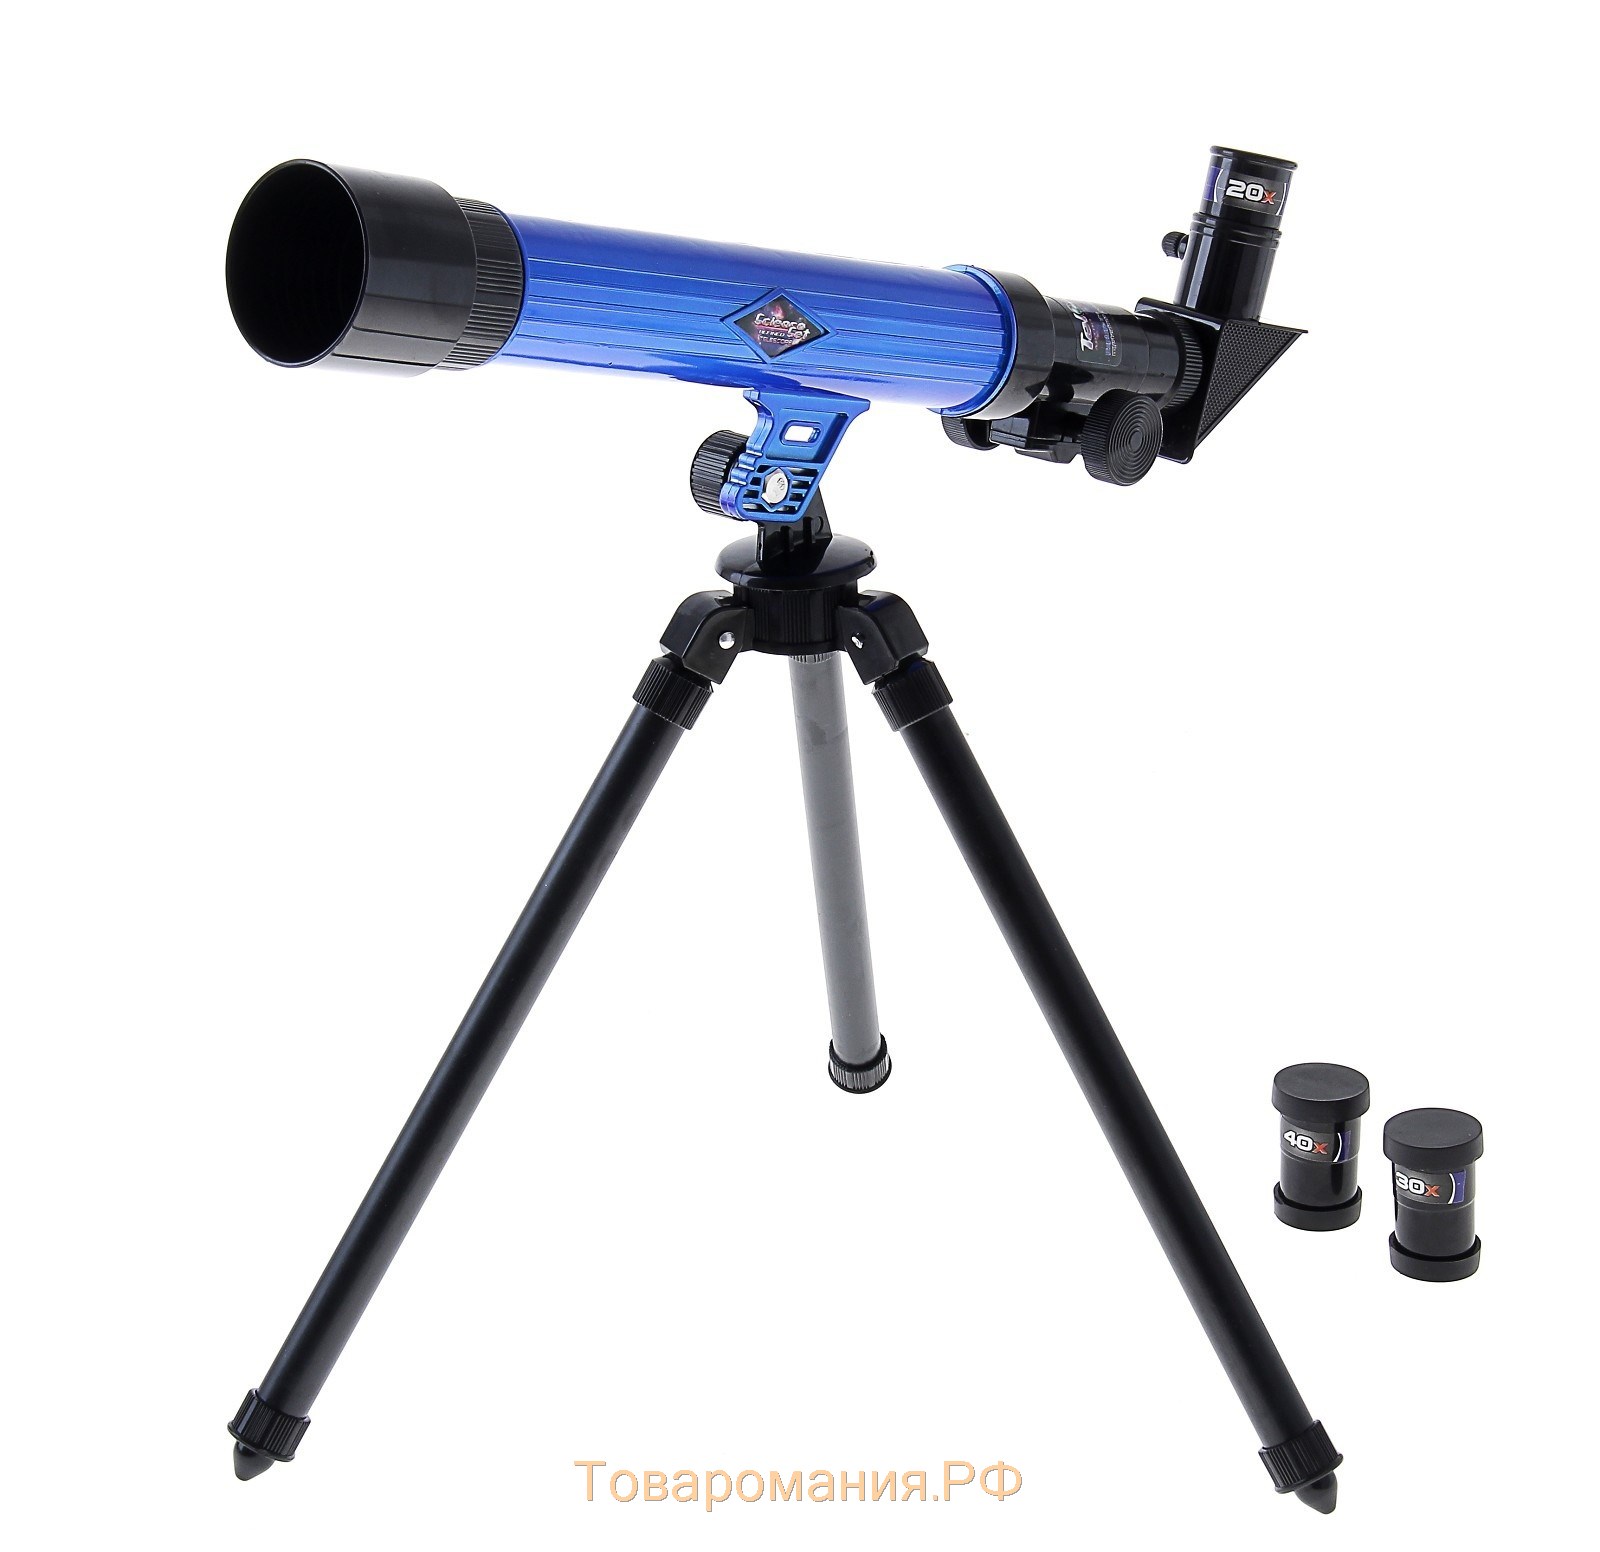 Набор обучающий "Юный натуралист Ultra": телескоп настольный 20х/ 30х/ 40х, съемные линзы, микроскоп